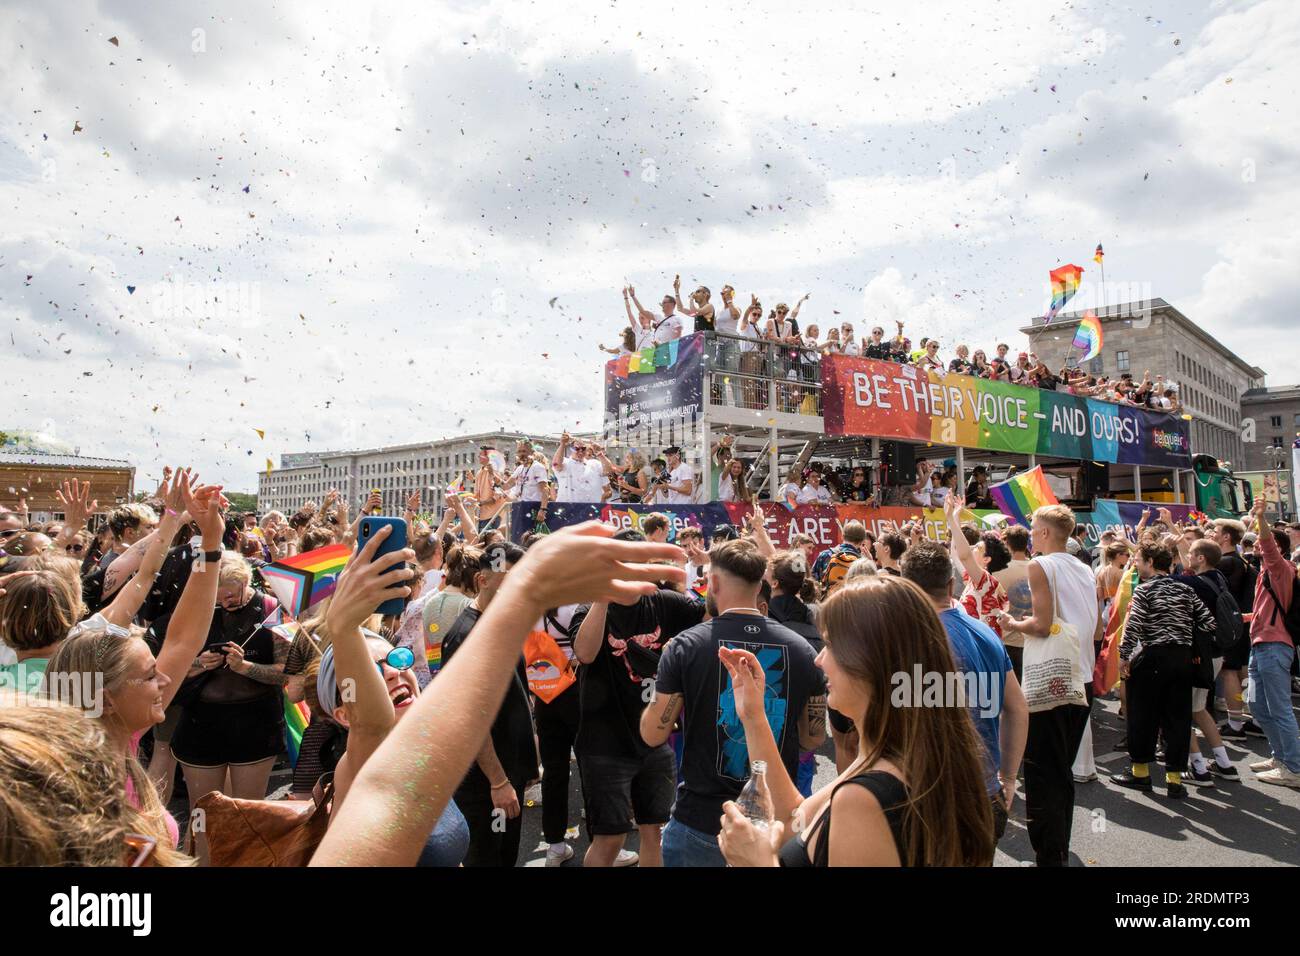 22 luglio 2023, Berlino, Germania: Il 22 luglio 2023, la città di Berlino era piena di colori e di cameratismo mentre celebrava il Christopher Street Day (CSD), noto anche come Berlin Pride. Migliaia di persone provenienti da diversi background si sono riunite per partecipare a questo vivace evento, che ha marciato da Leipziger Strasse fino all'iconica porta di Brandeburgo. L'aria è stata piena di senso di unità e orgoglio, mentre i partecipanti hanno indossato uno spettro di costumi colorati e bandiere arcobaleno ondulate, un simbolo universale di sostegno per la comunità LGBTQ. Tuttavia, l'evento è stato più di una semplice festa. E' servito come pla Foto Stock